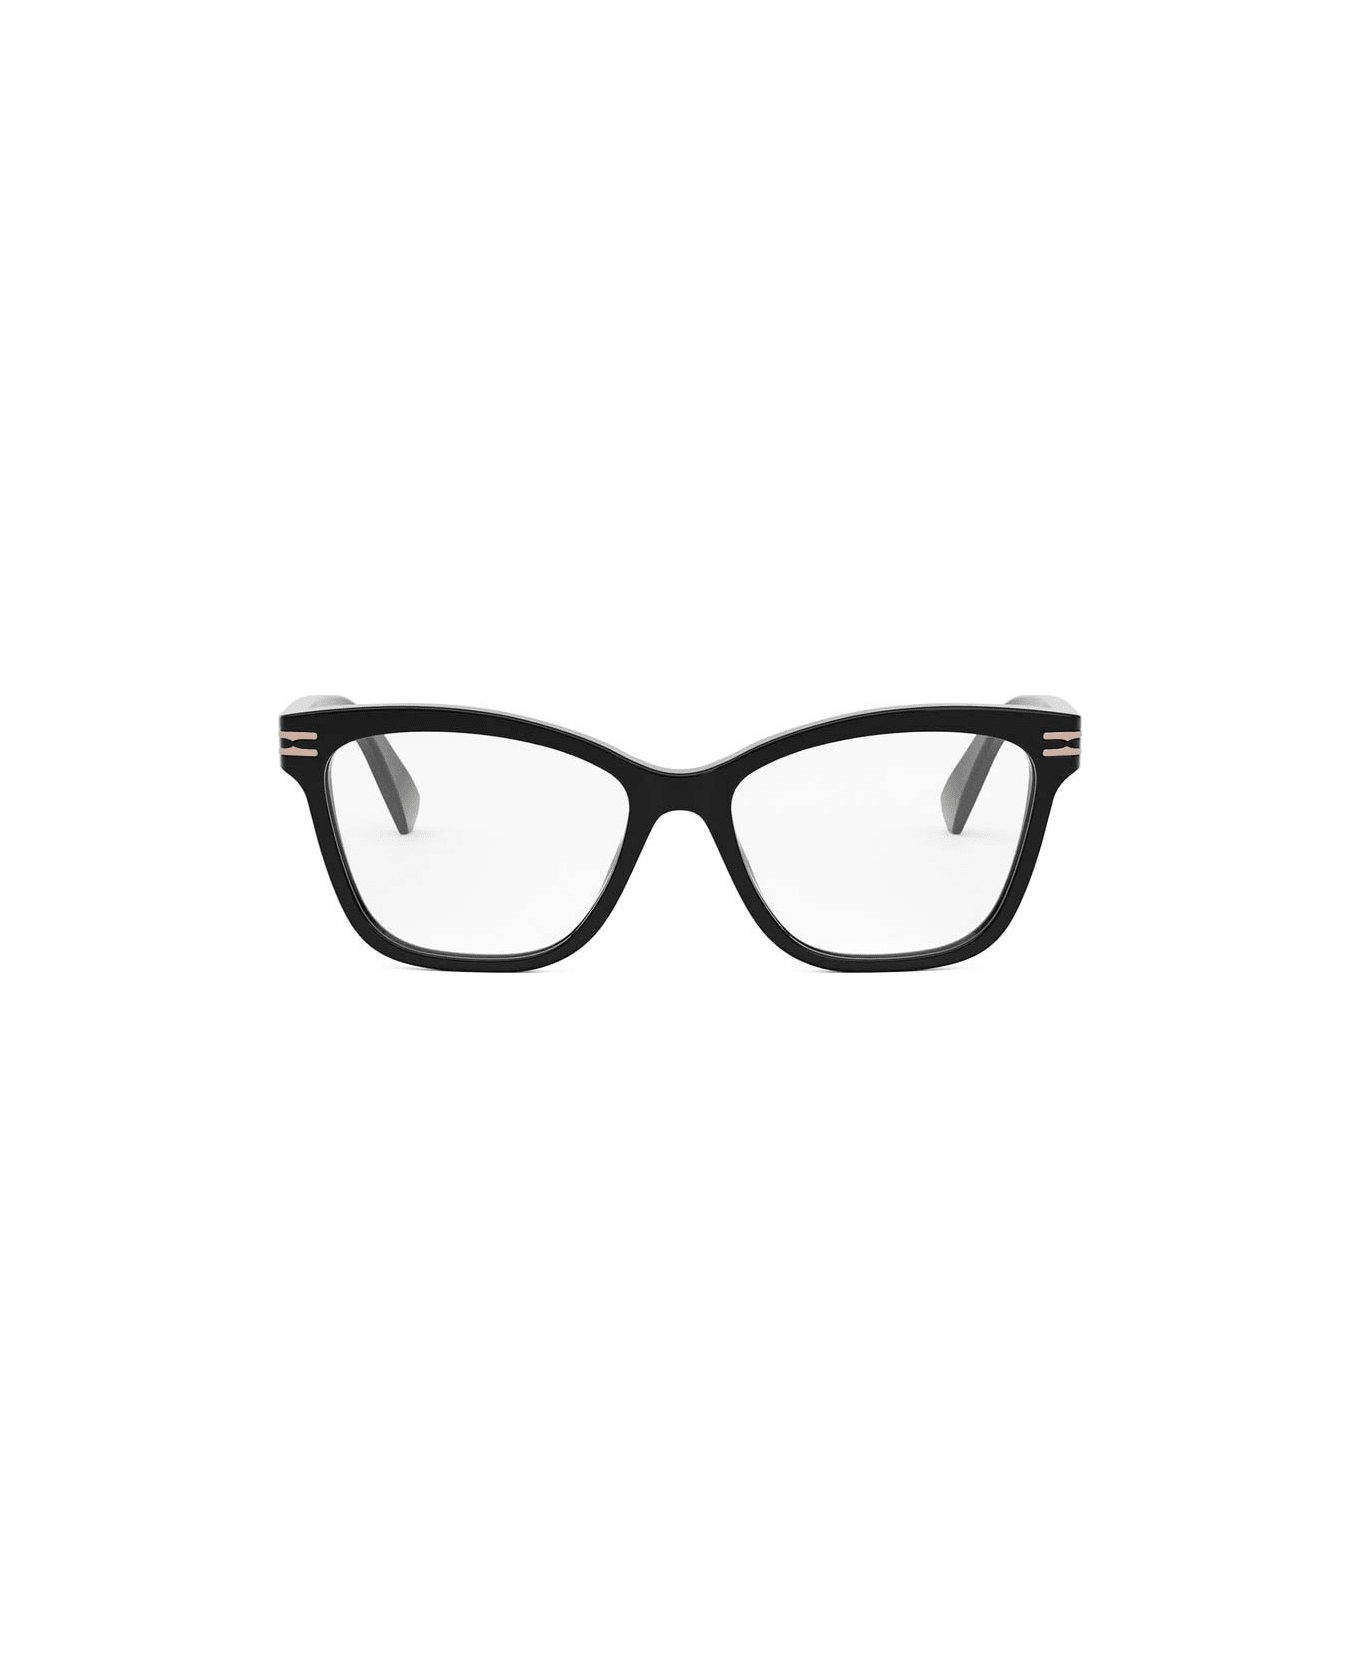 Bulgari Glasses - Nero アイウェア